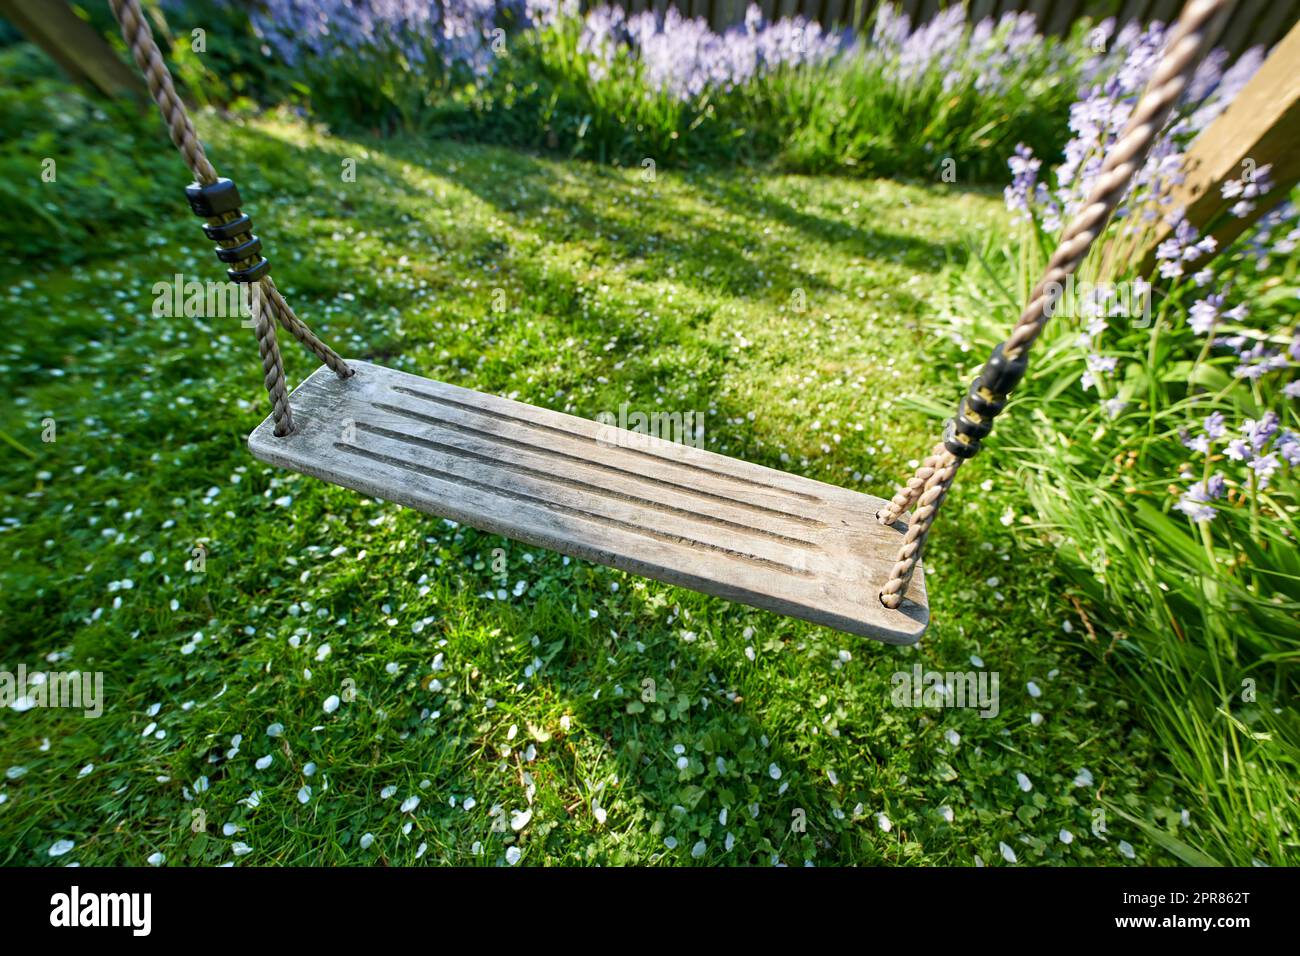 Nahaufnahme einer Schaukel an einem Seil in einem friedlichen Garten im Sommer. Grünes, üppiges Grasblatt wächst in einem Garten mit Lavendelblumen, die blühen und blühen. Alte rustikale Holzschaukel auf einer Wiese Stockfoto